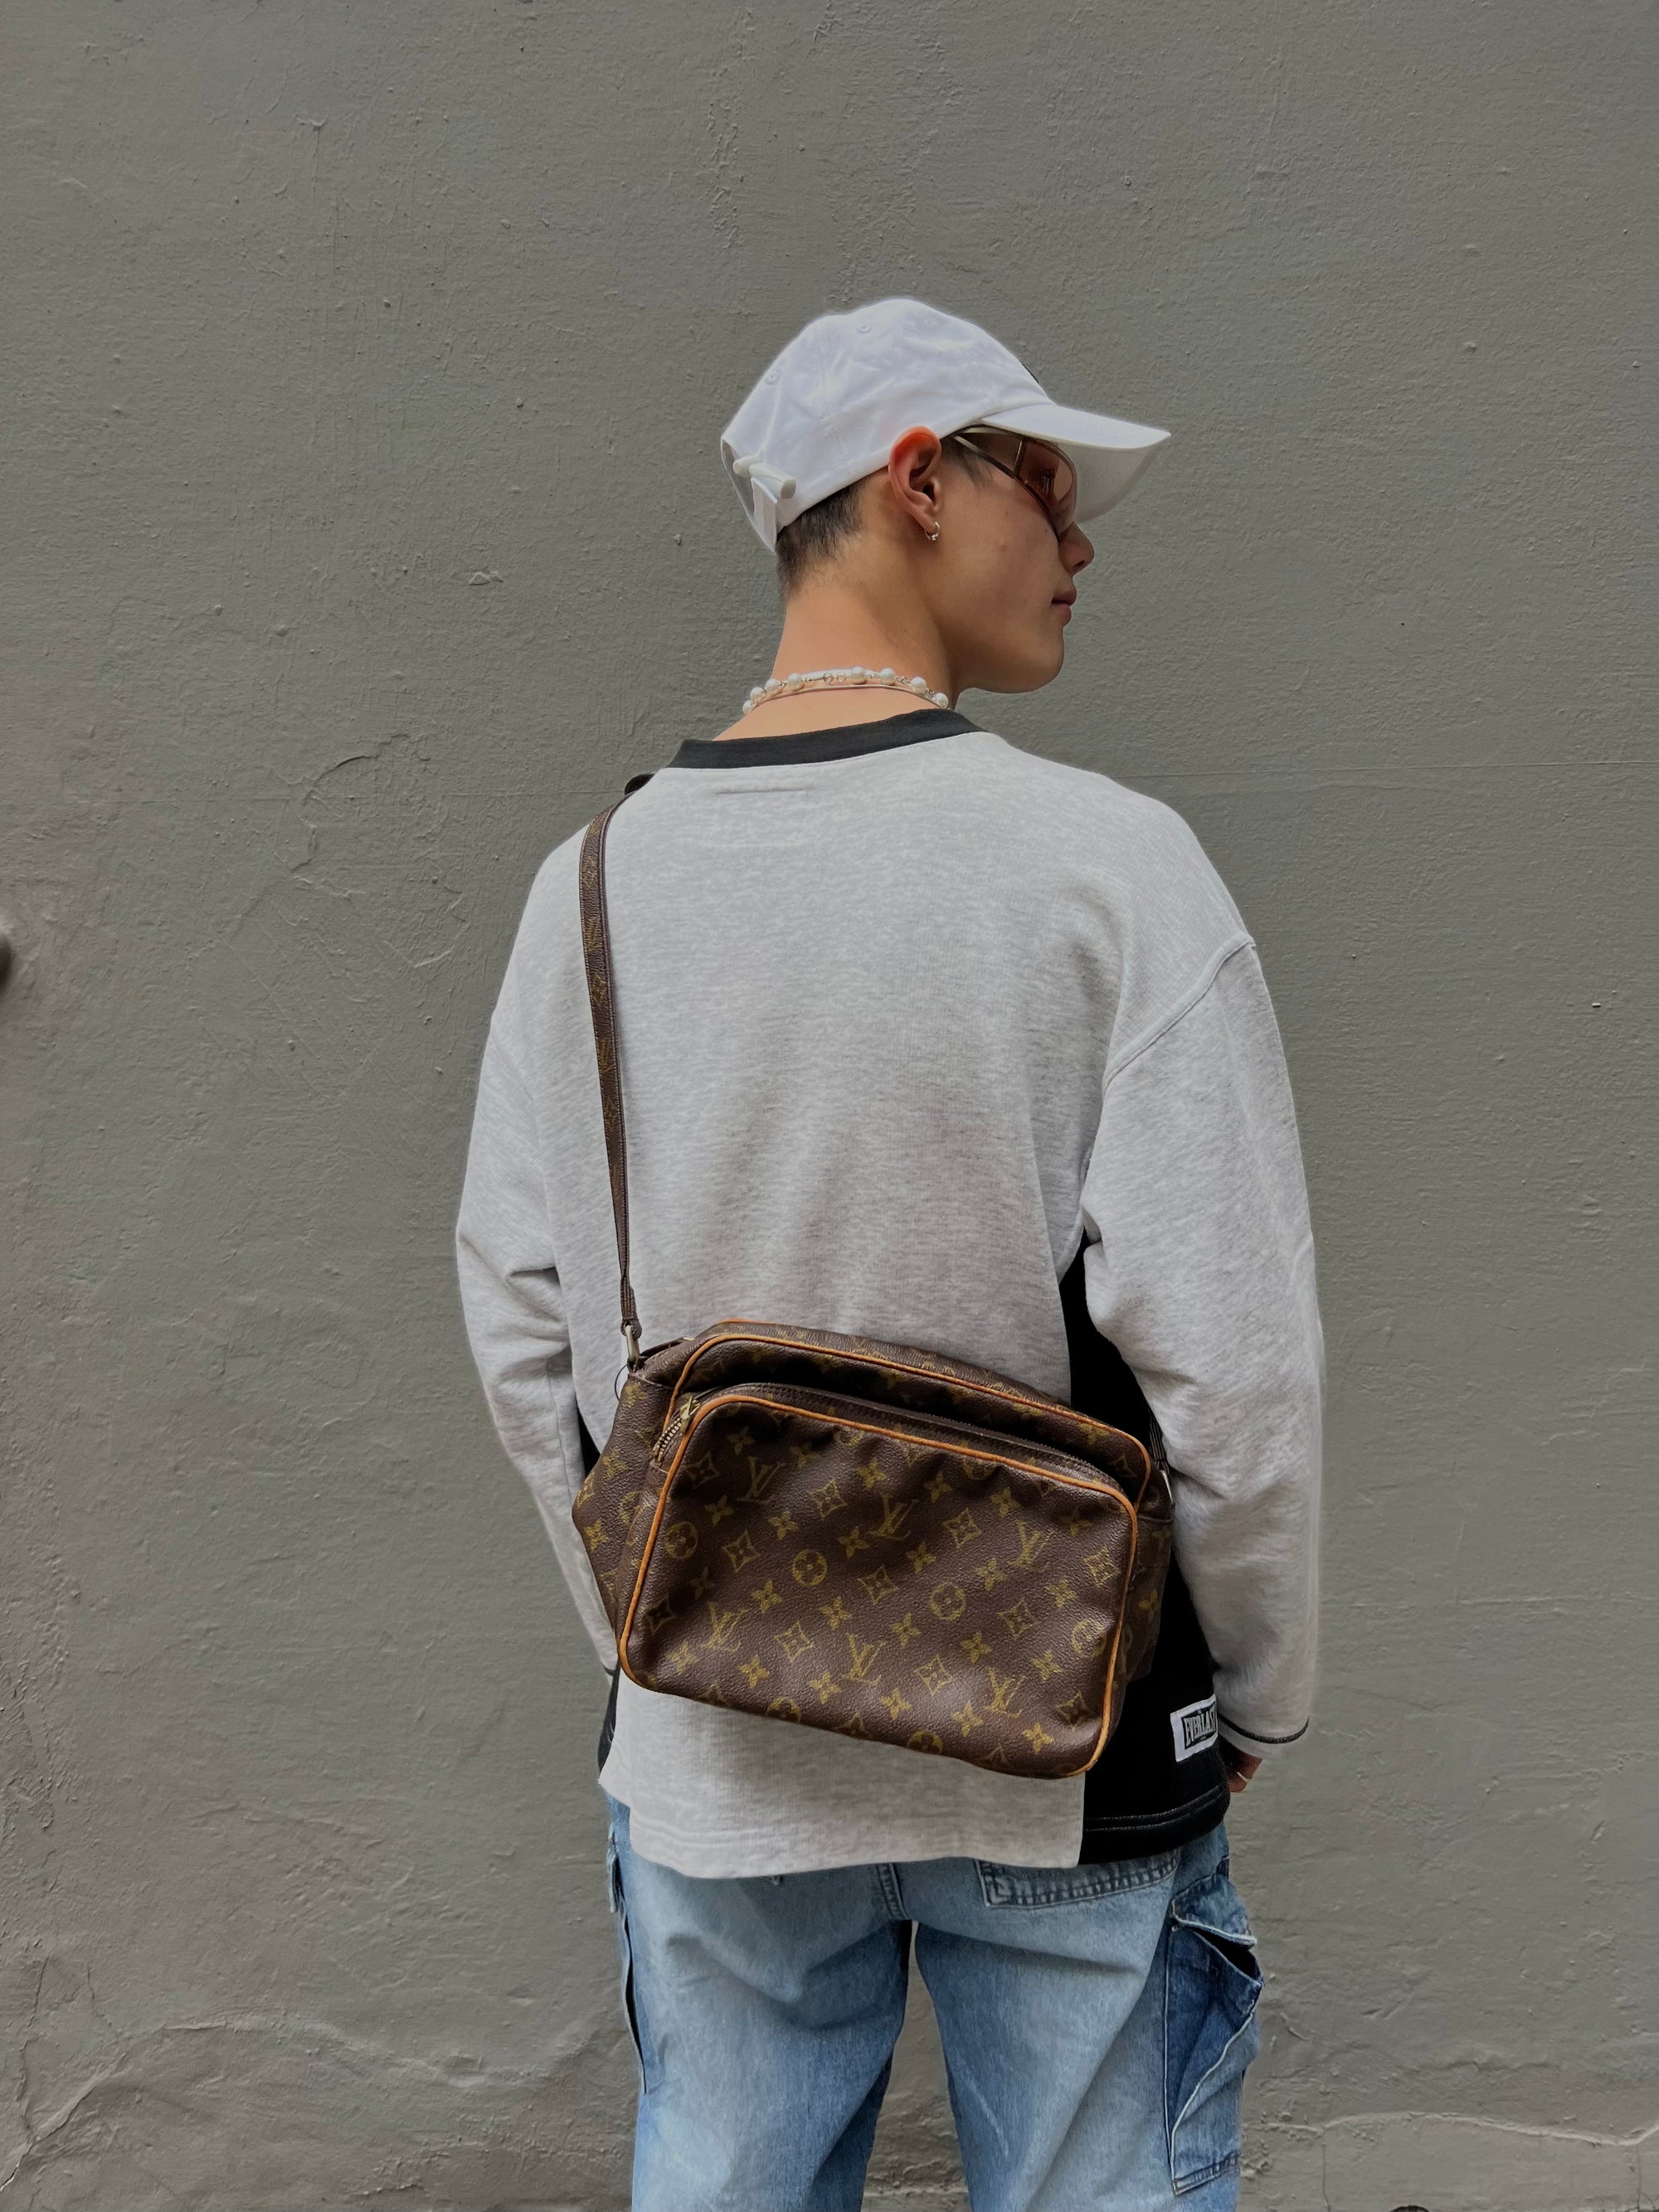 Tragefoto von luis Vuitton Tasche vor grauer Wand 